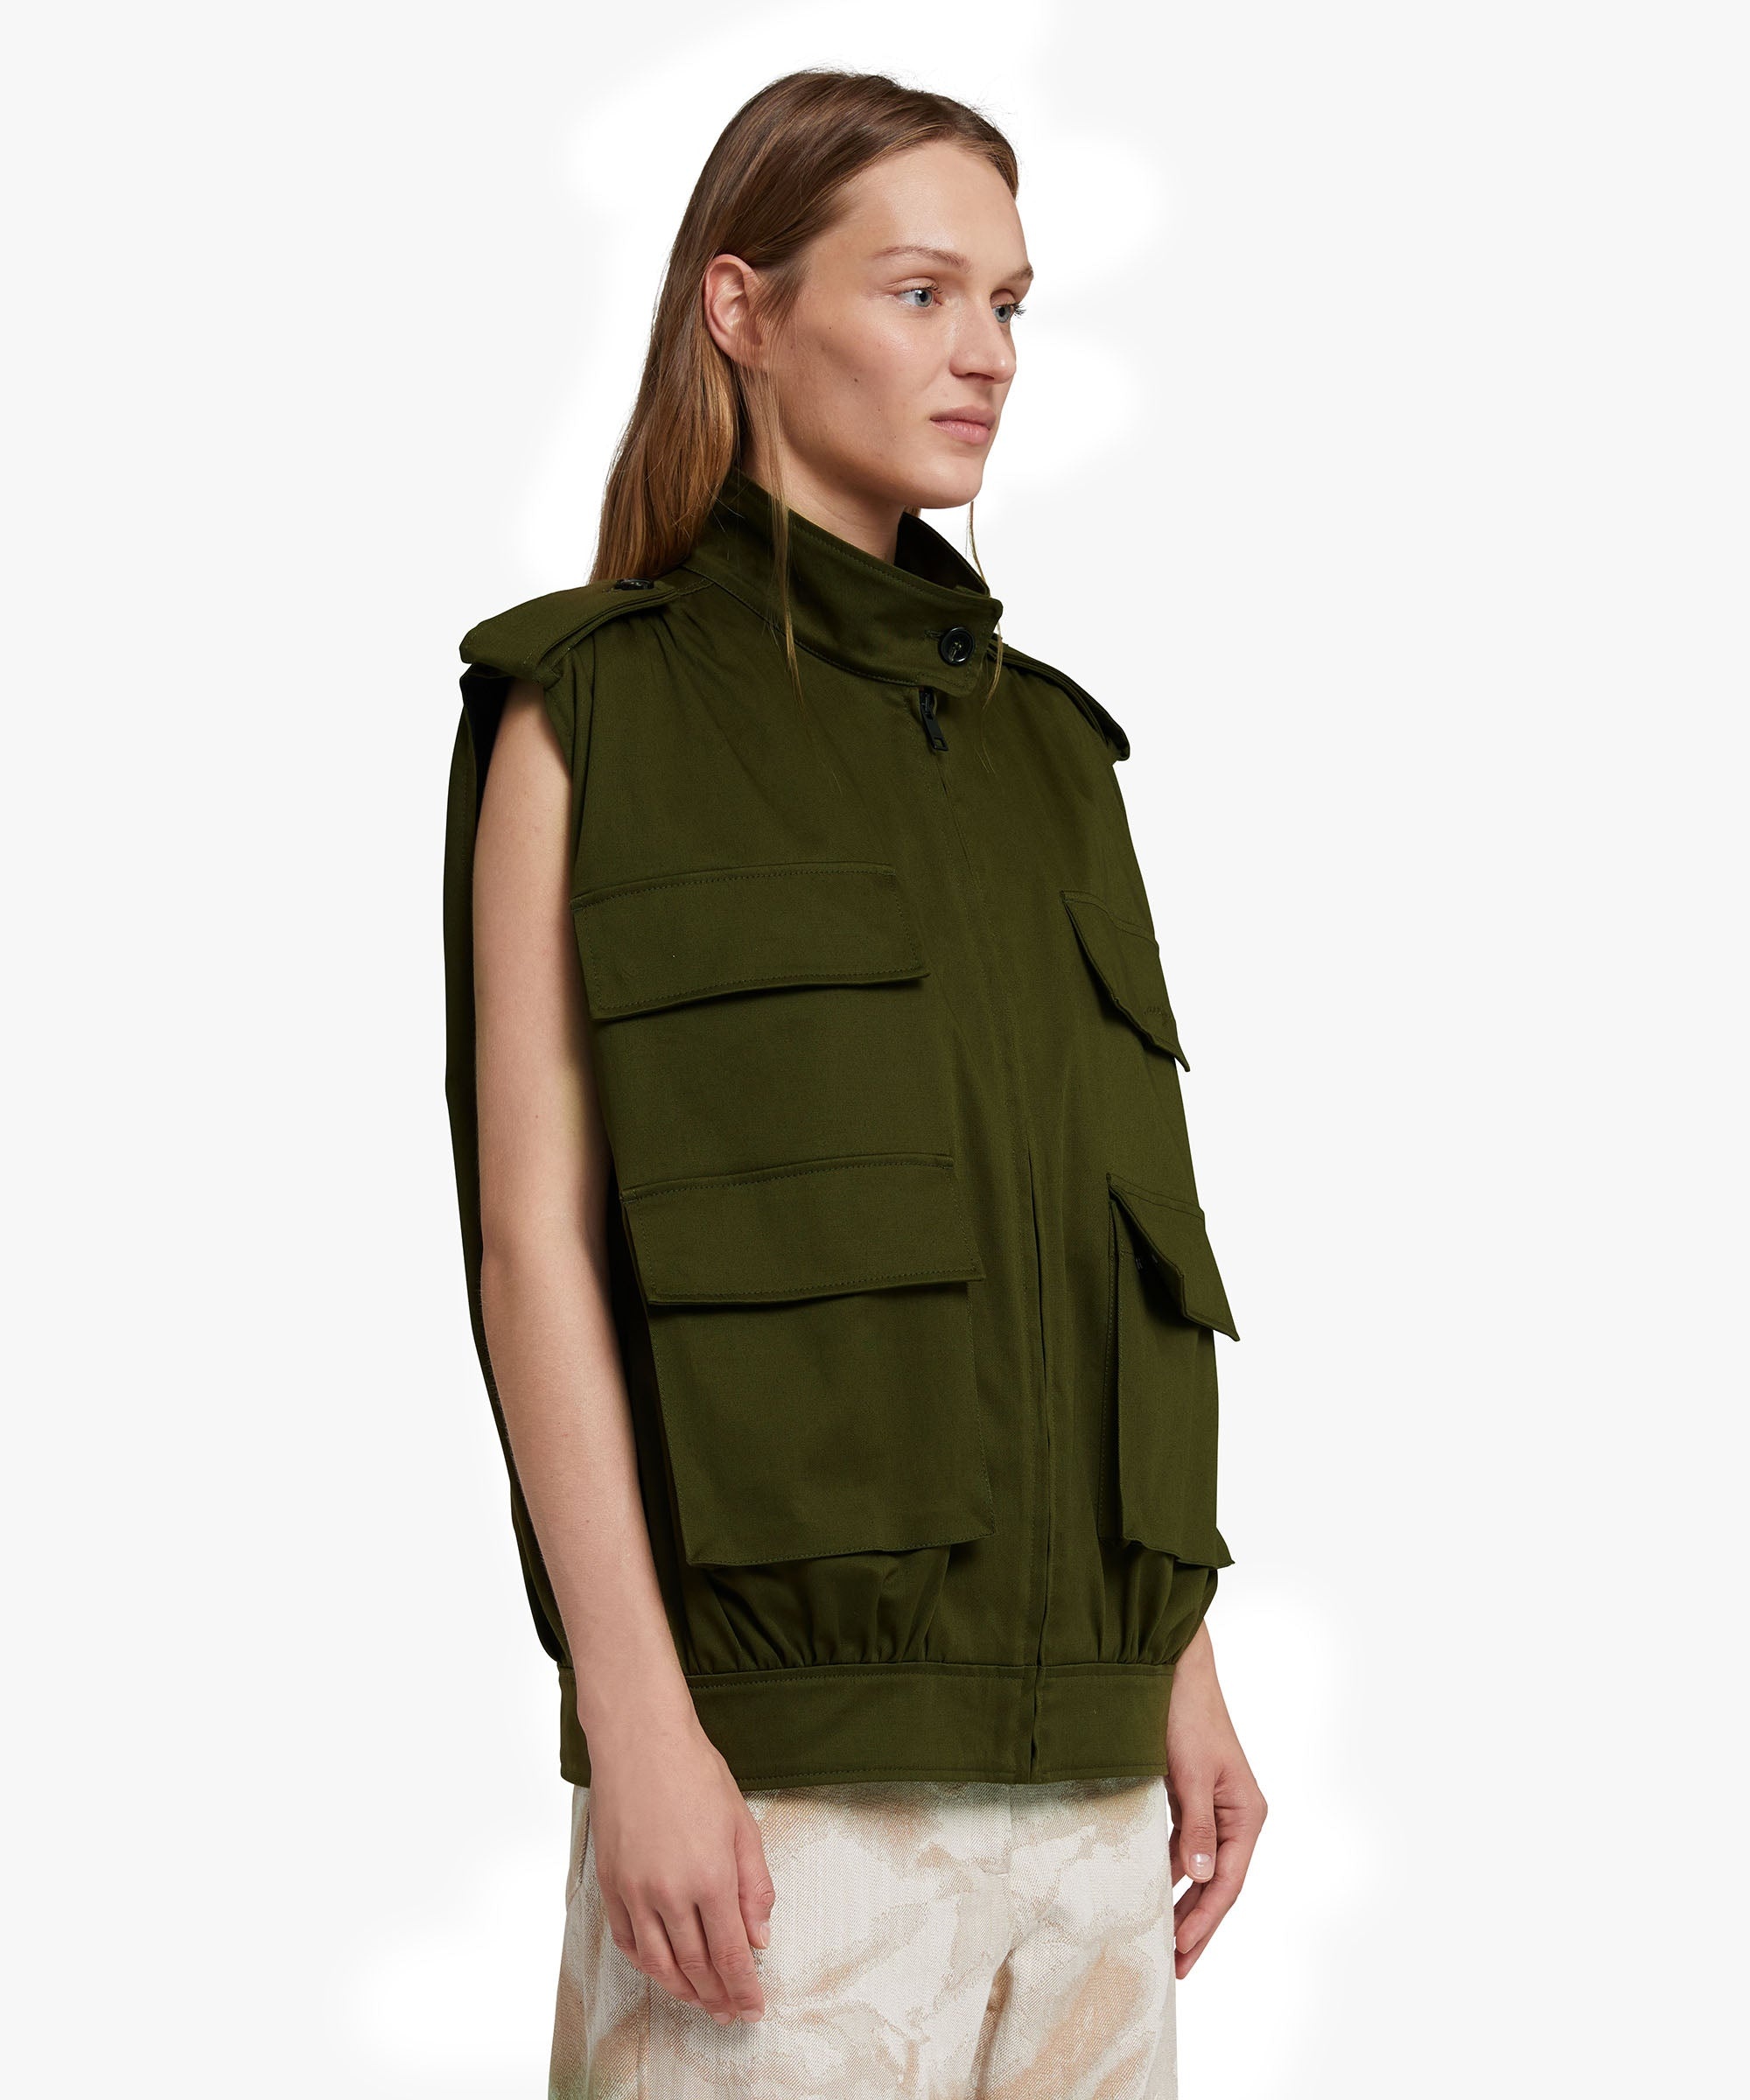 Gabardine cotton sleeveless jacket with big pockets - 4